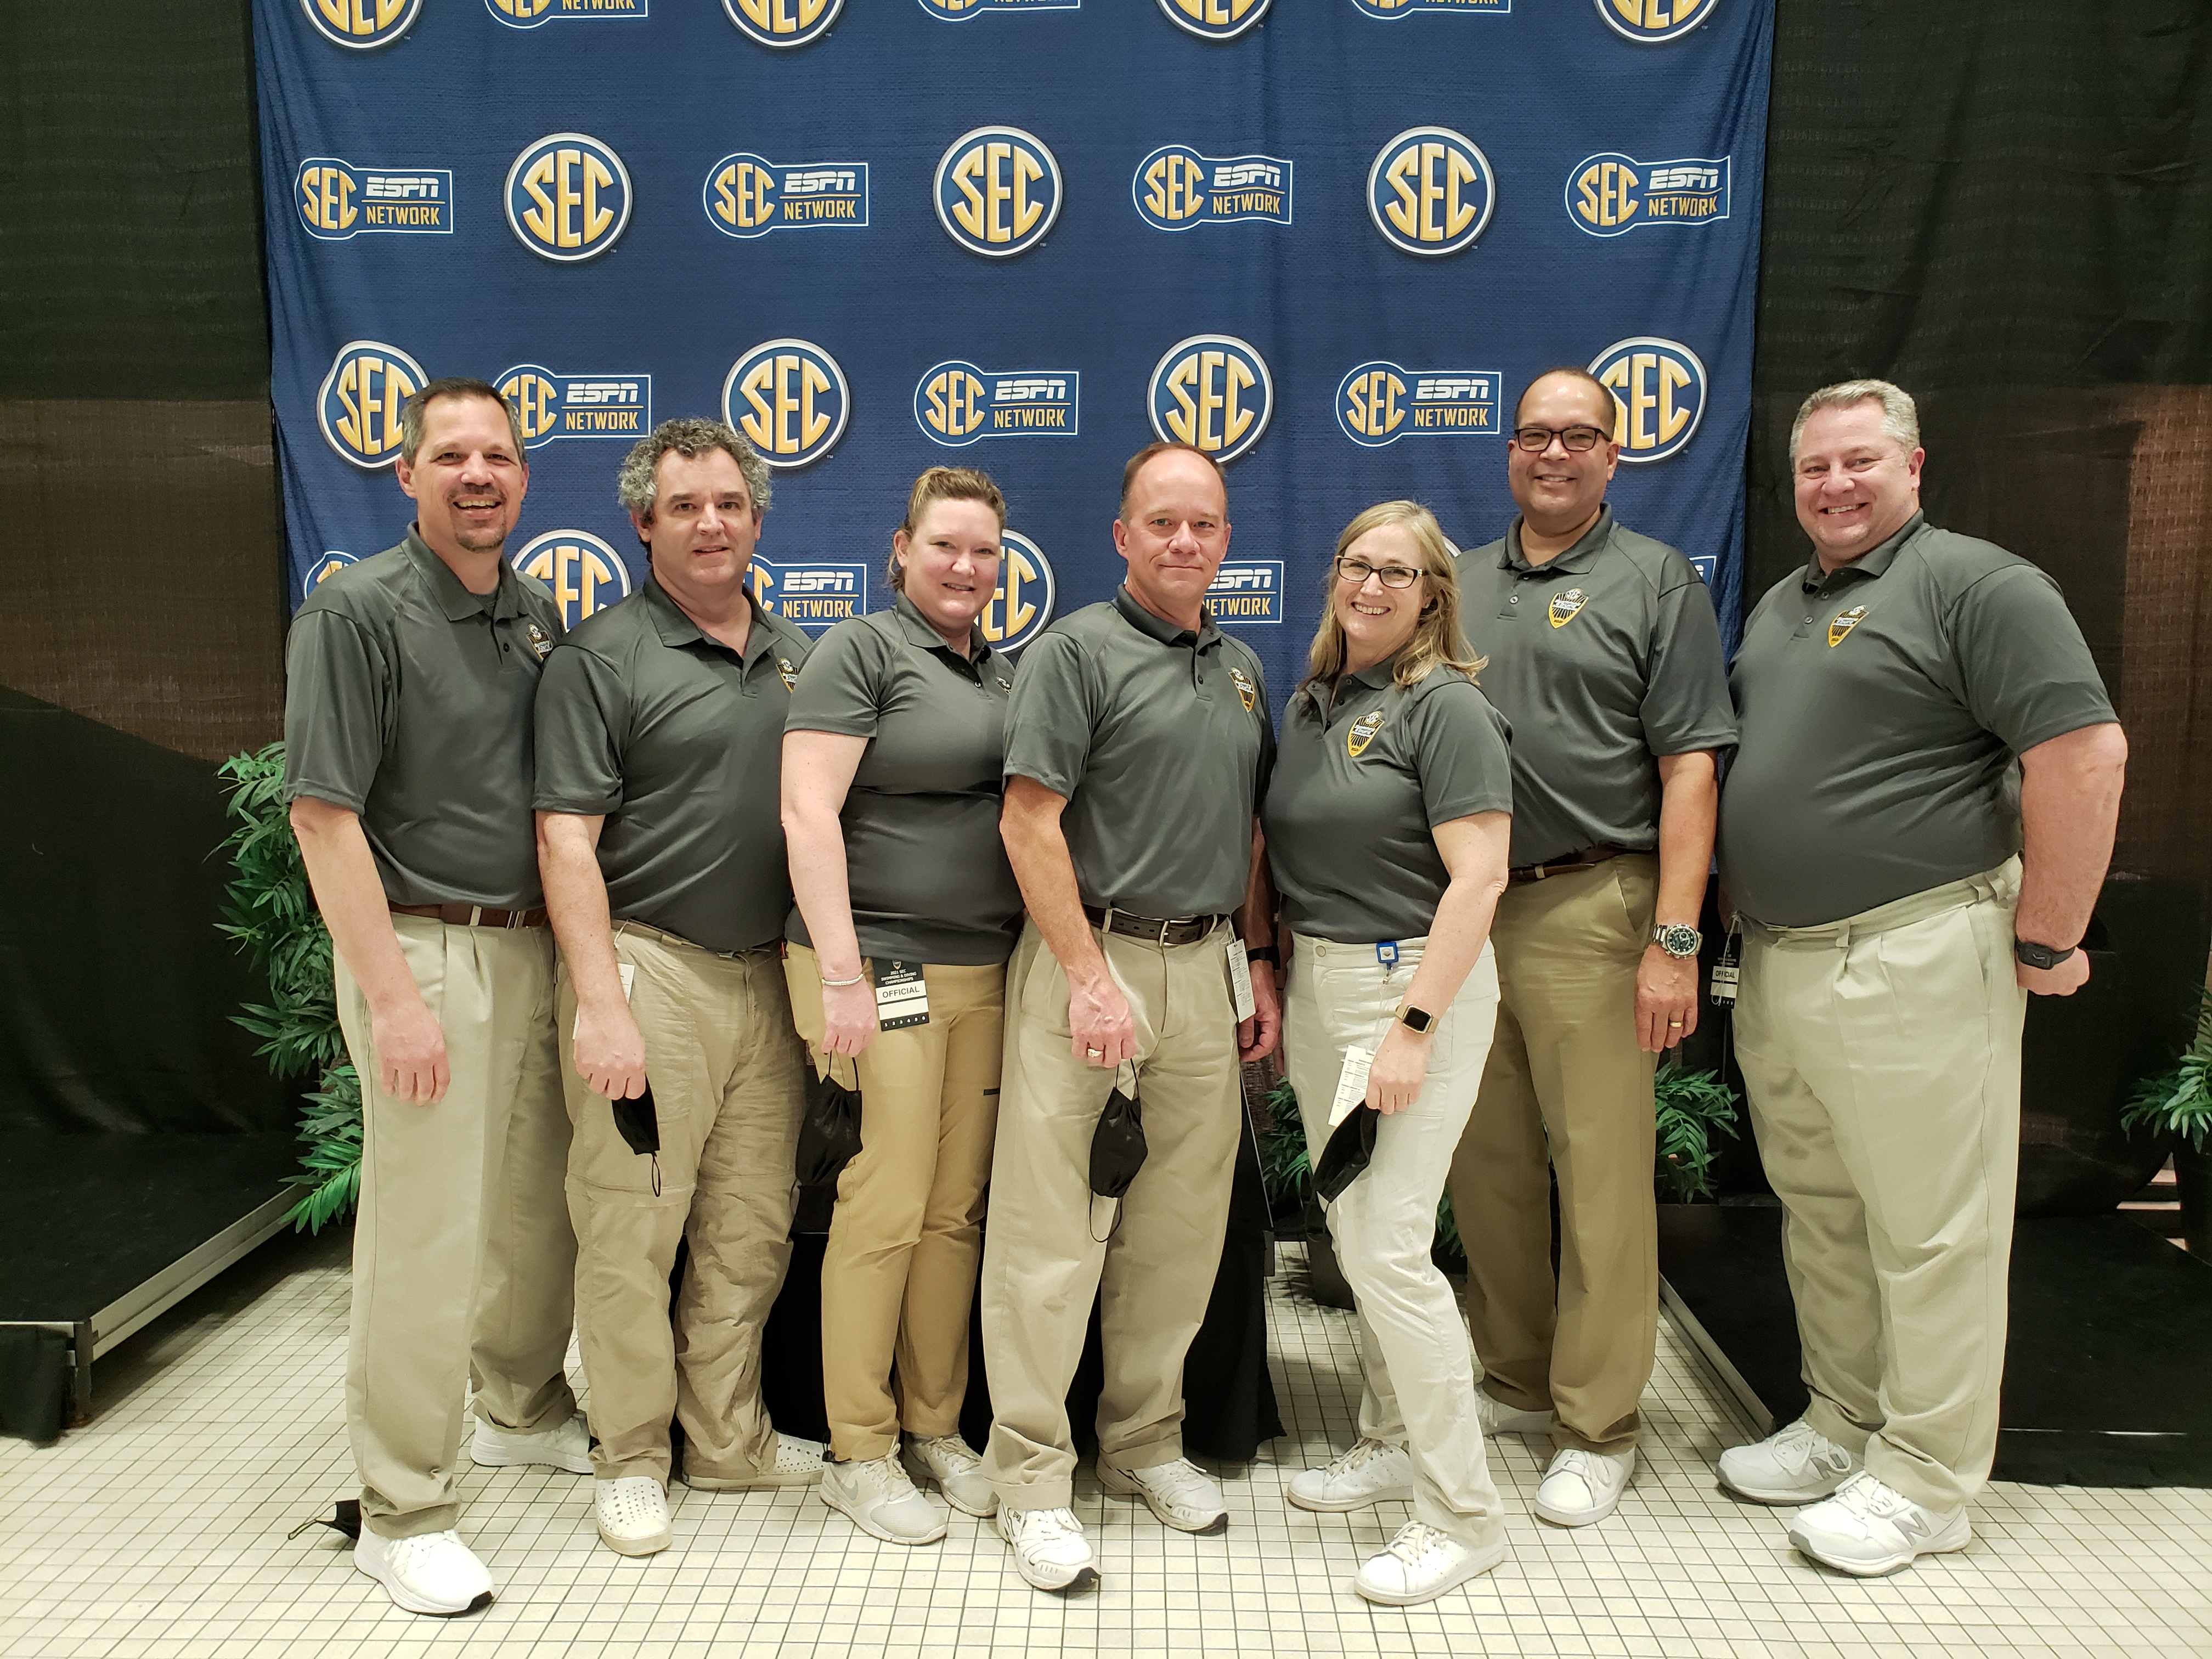 Ozark Officials at 2021 SEC Men's Campionship